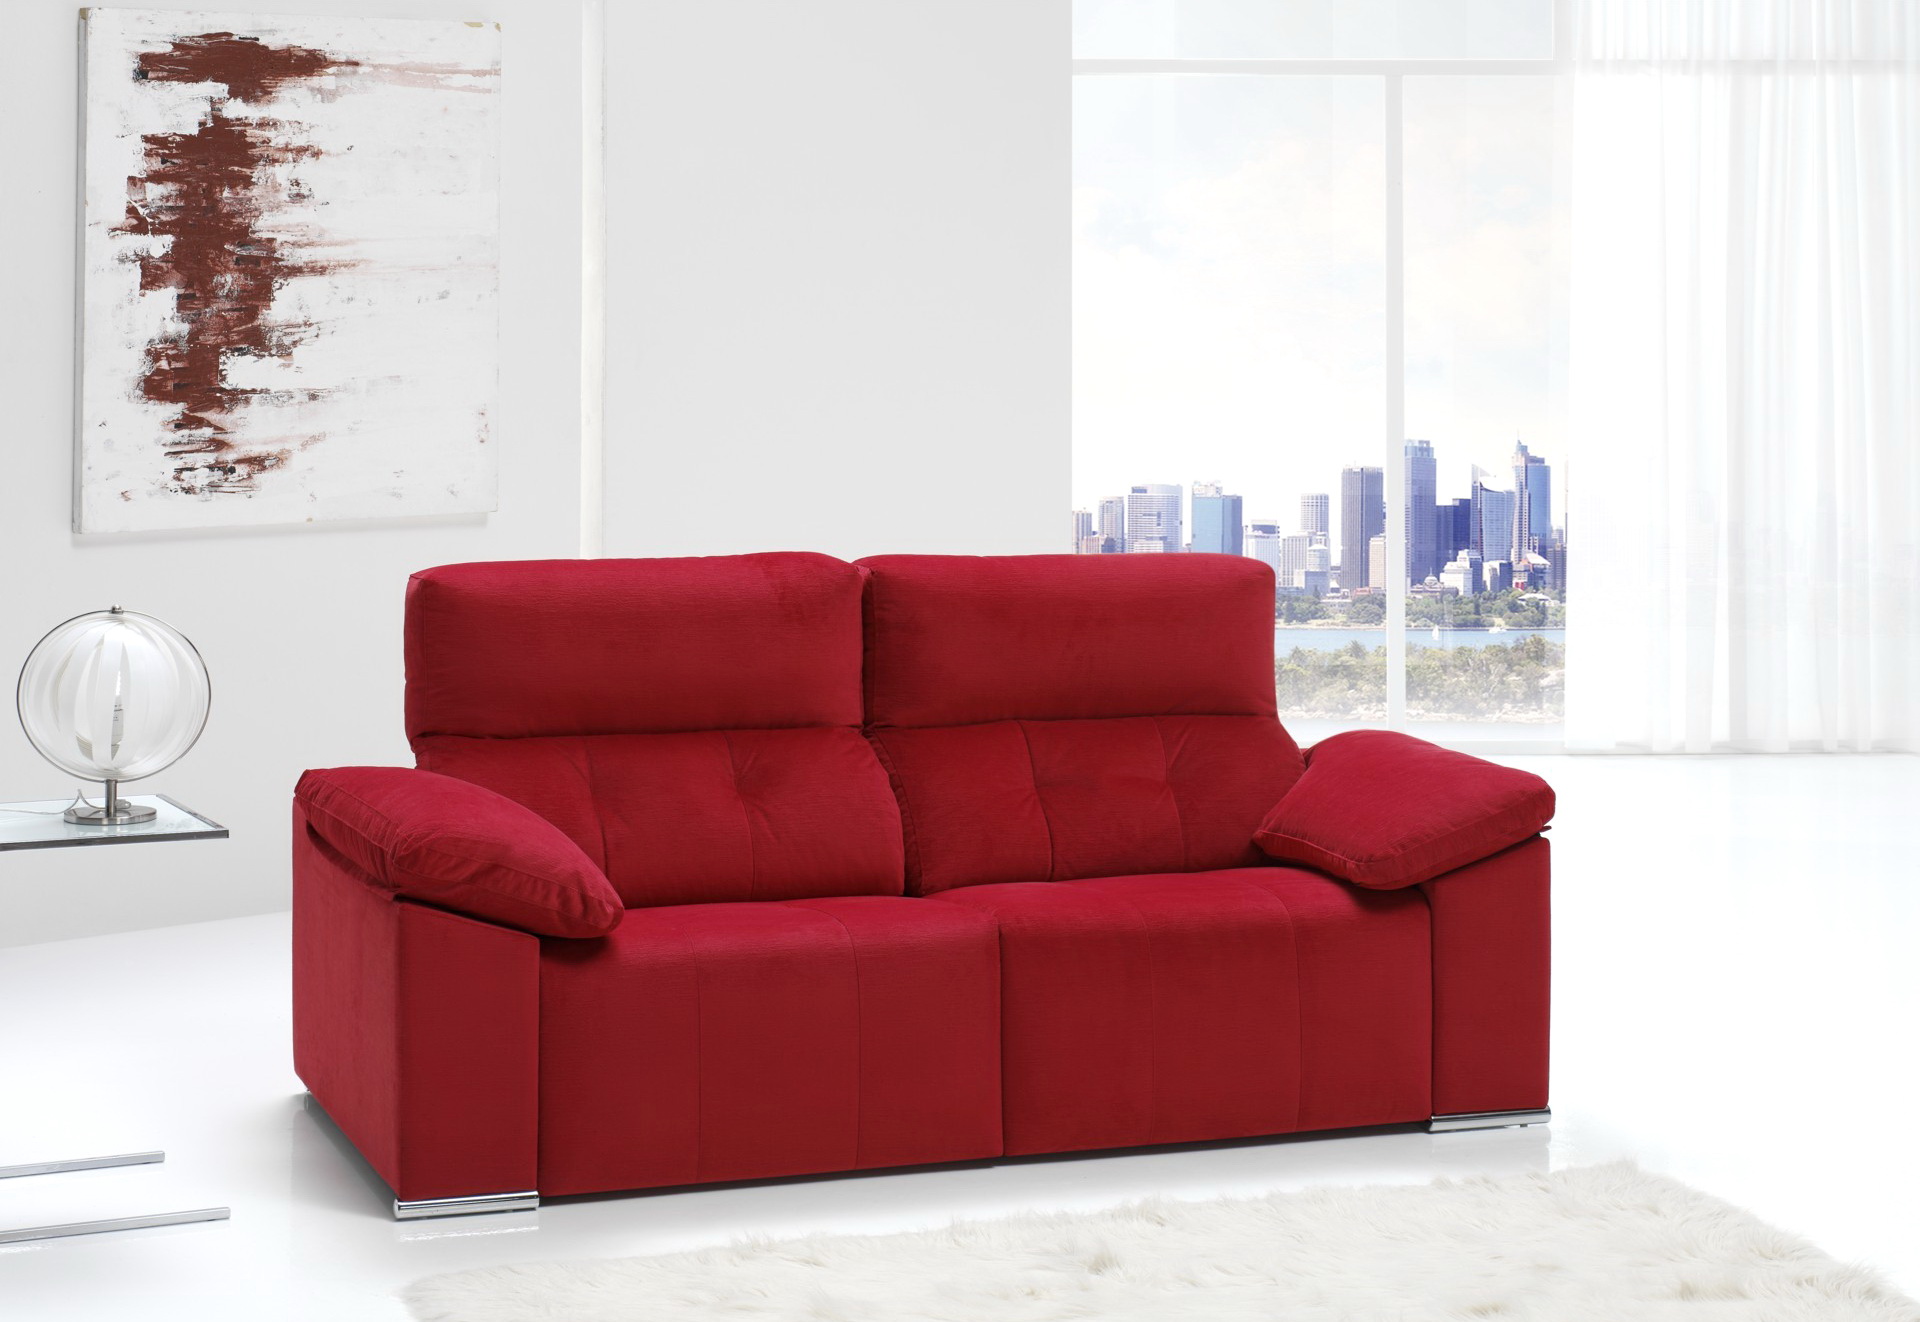 Soriano Martinez Tapizados modelo 594 confort 0071 2plazas relax en muebles antoñán® León